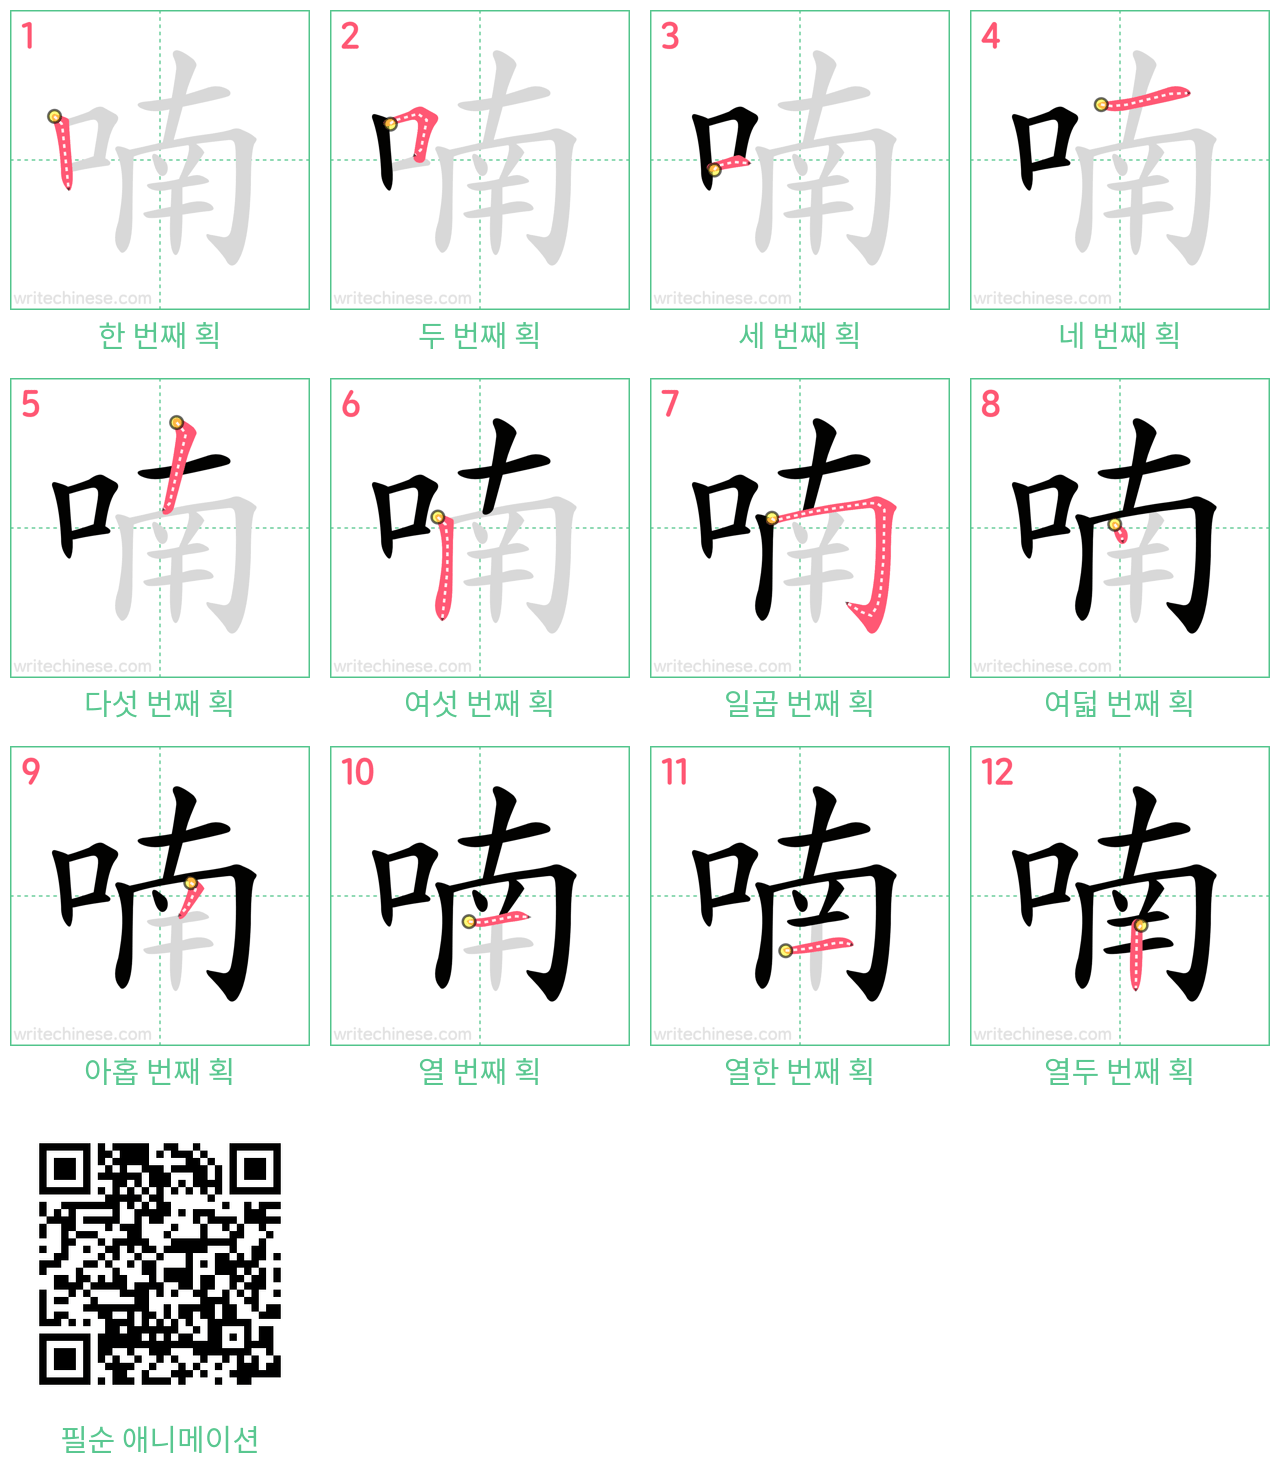 喃 step-by-step stroke order diagrams